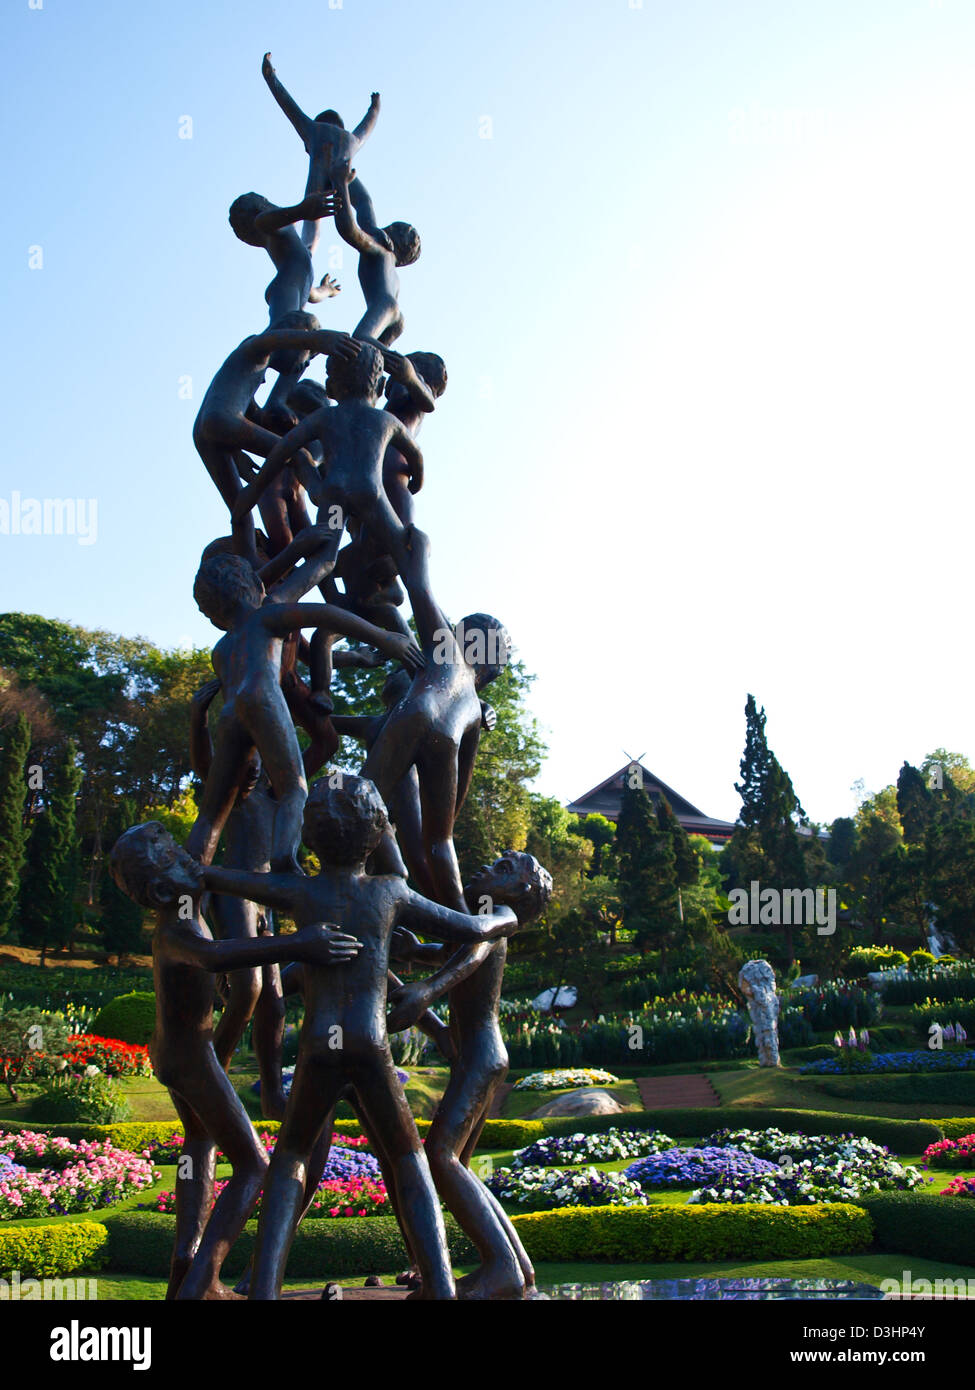 Statue de continuité, une sculpture de la fin de l'Misiem Yip-In-soi dans le jardin Mae Fah Luang sur Doi Tung Chiang Rai, Thaïlande Banque D'Images